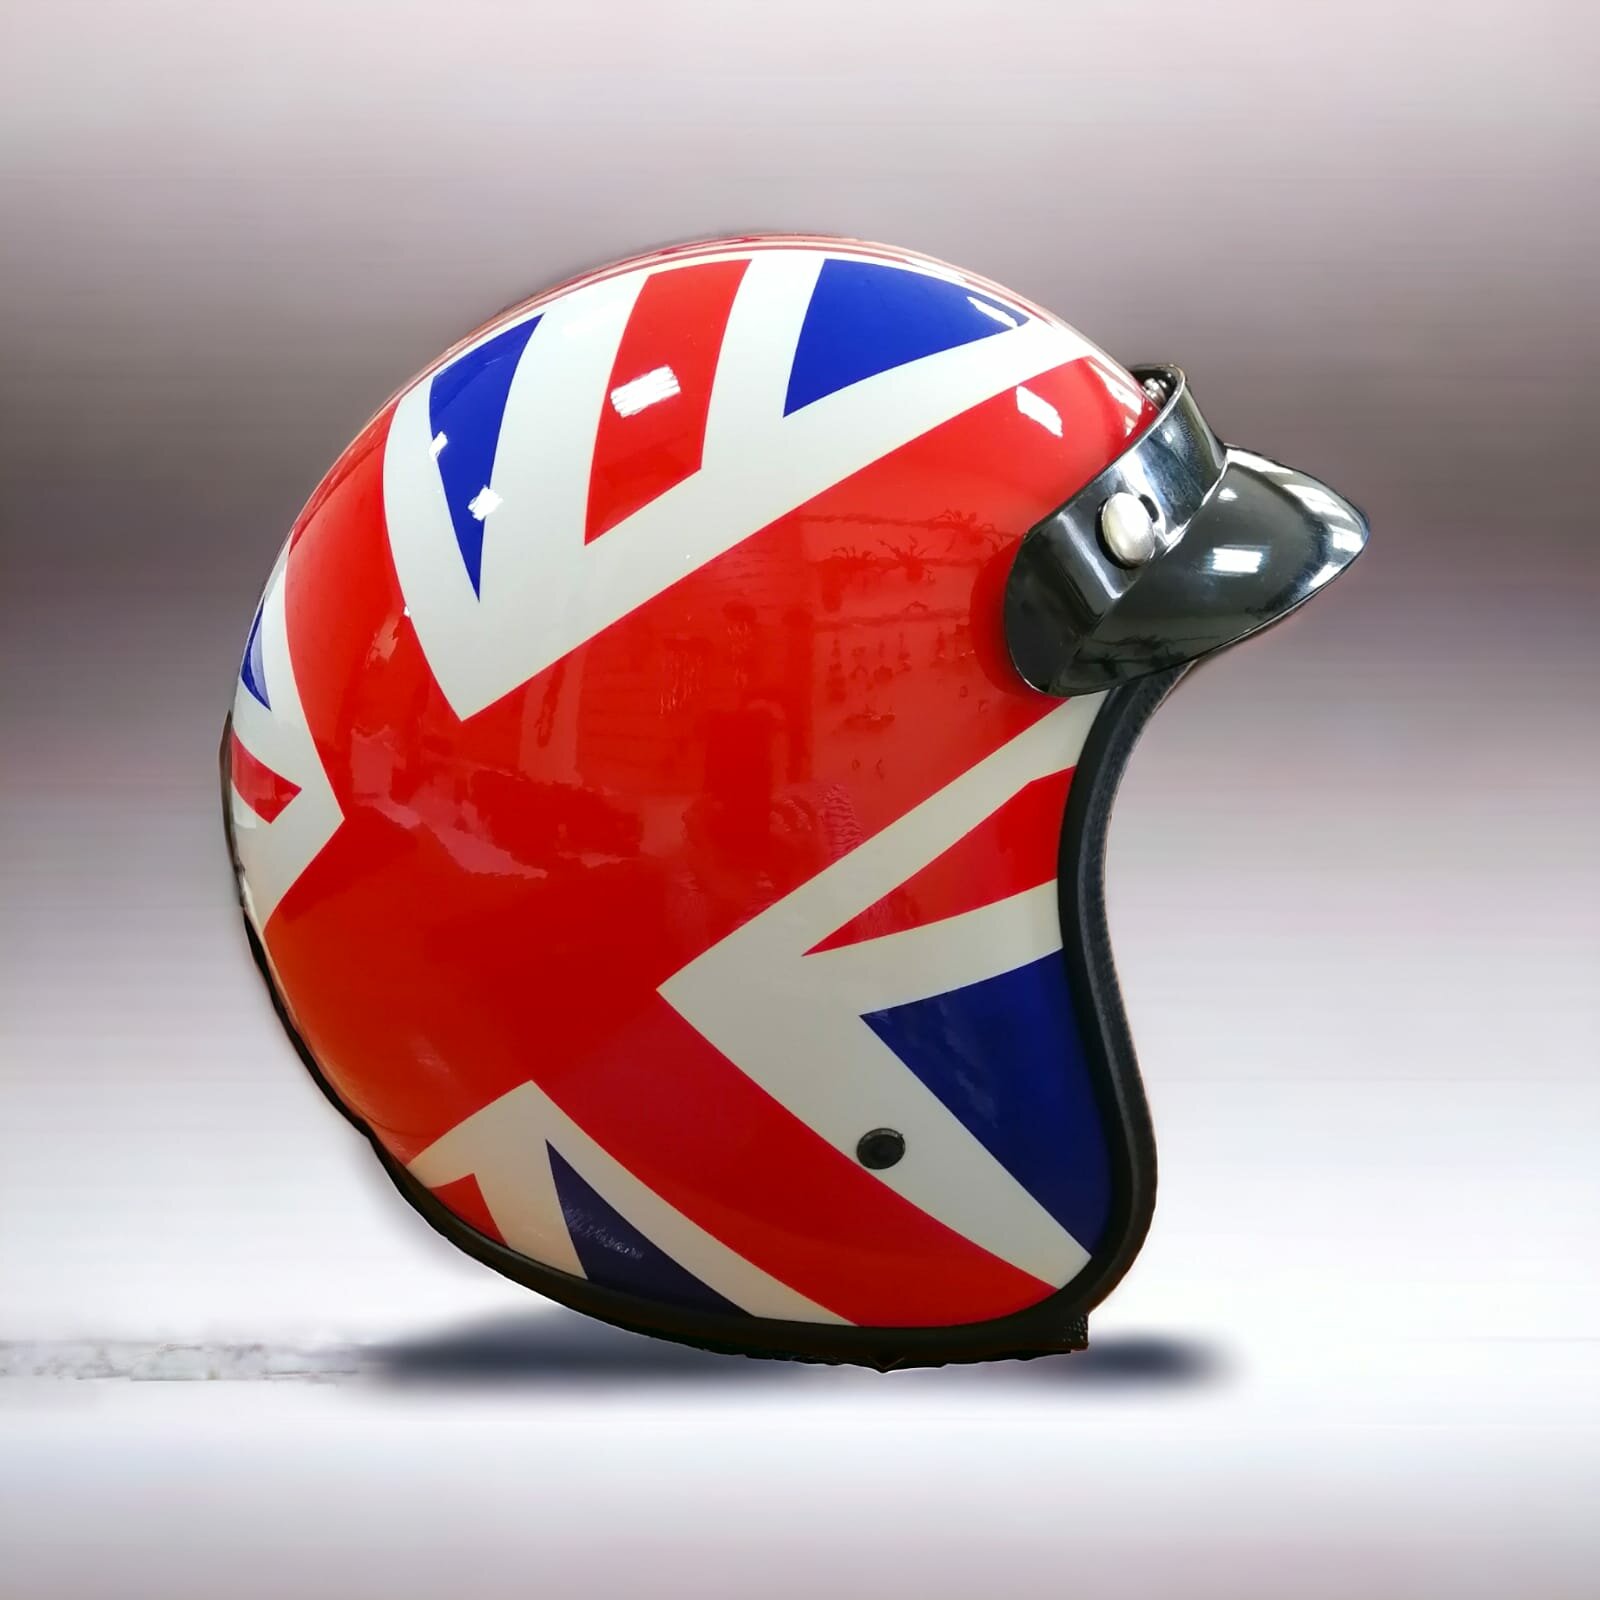 Шлем мотоциклетный /мотошлем /каска для мотоцикла, байкерский шлем в стиле британского флага размер XL